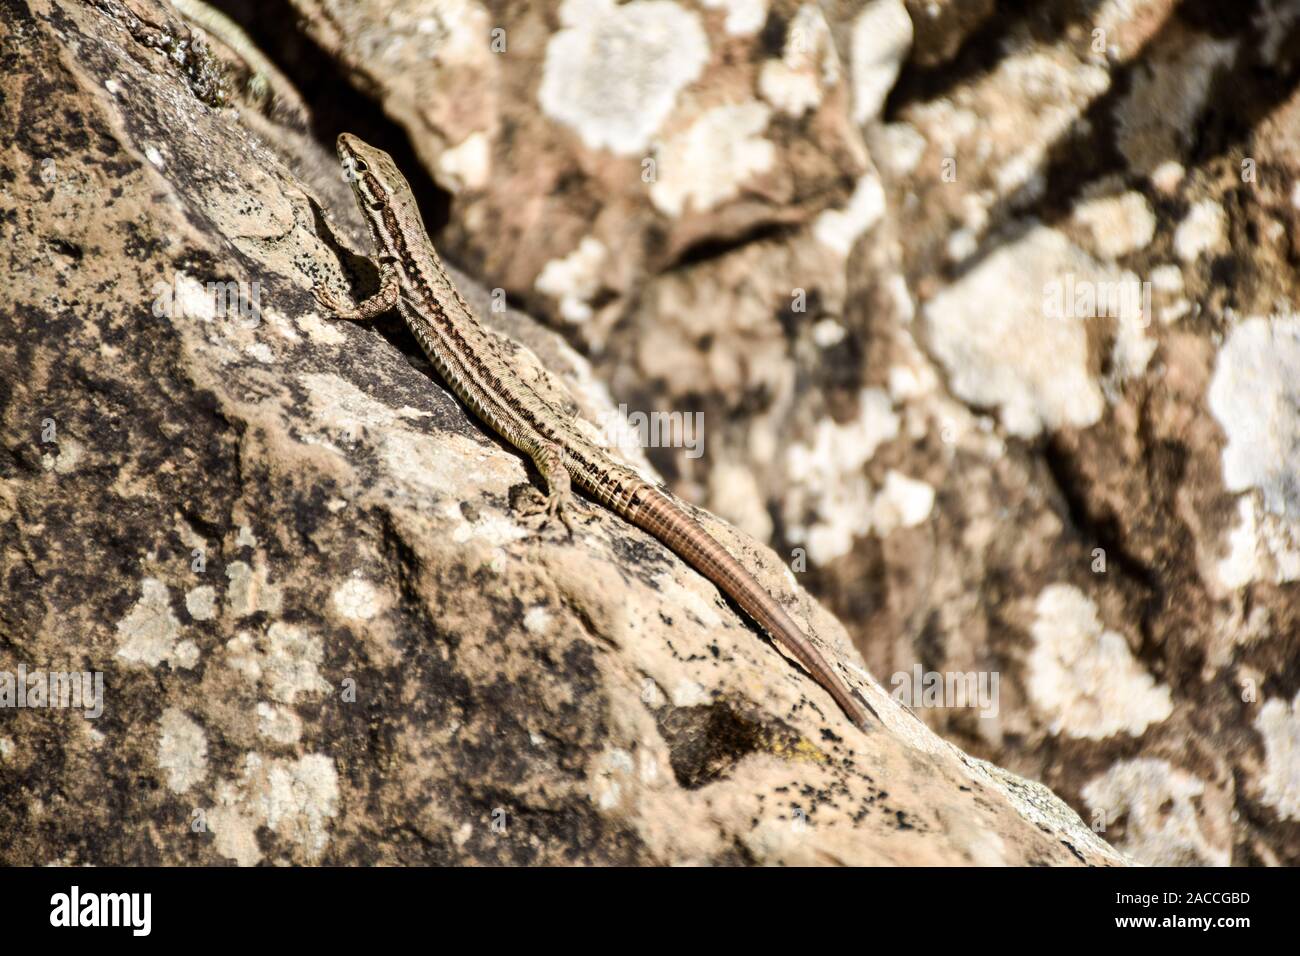 El lagarto arrastrándose sobre una roca en la mímica Foto de stock